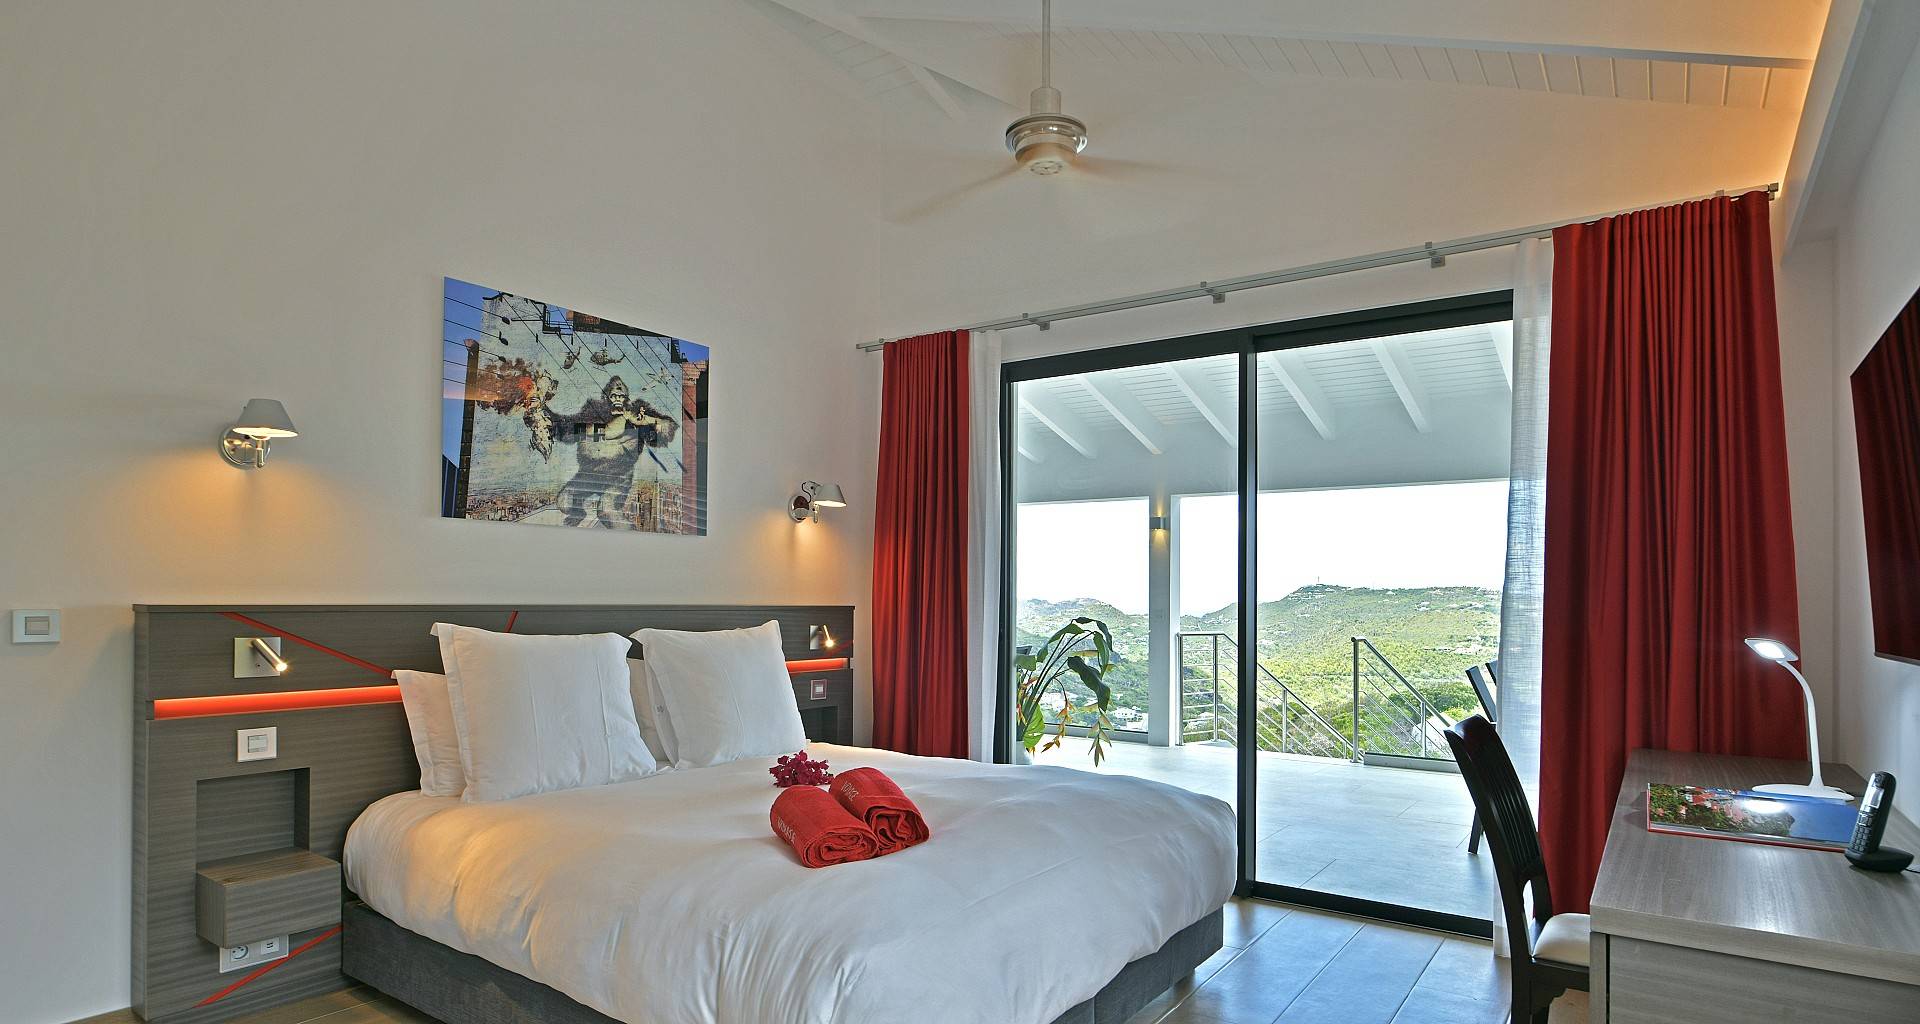 Villa Voyage Bedroom 1